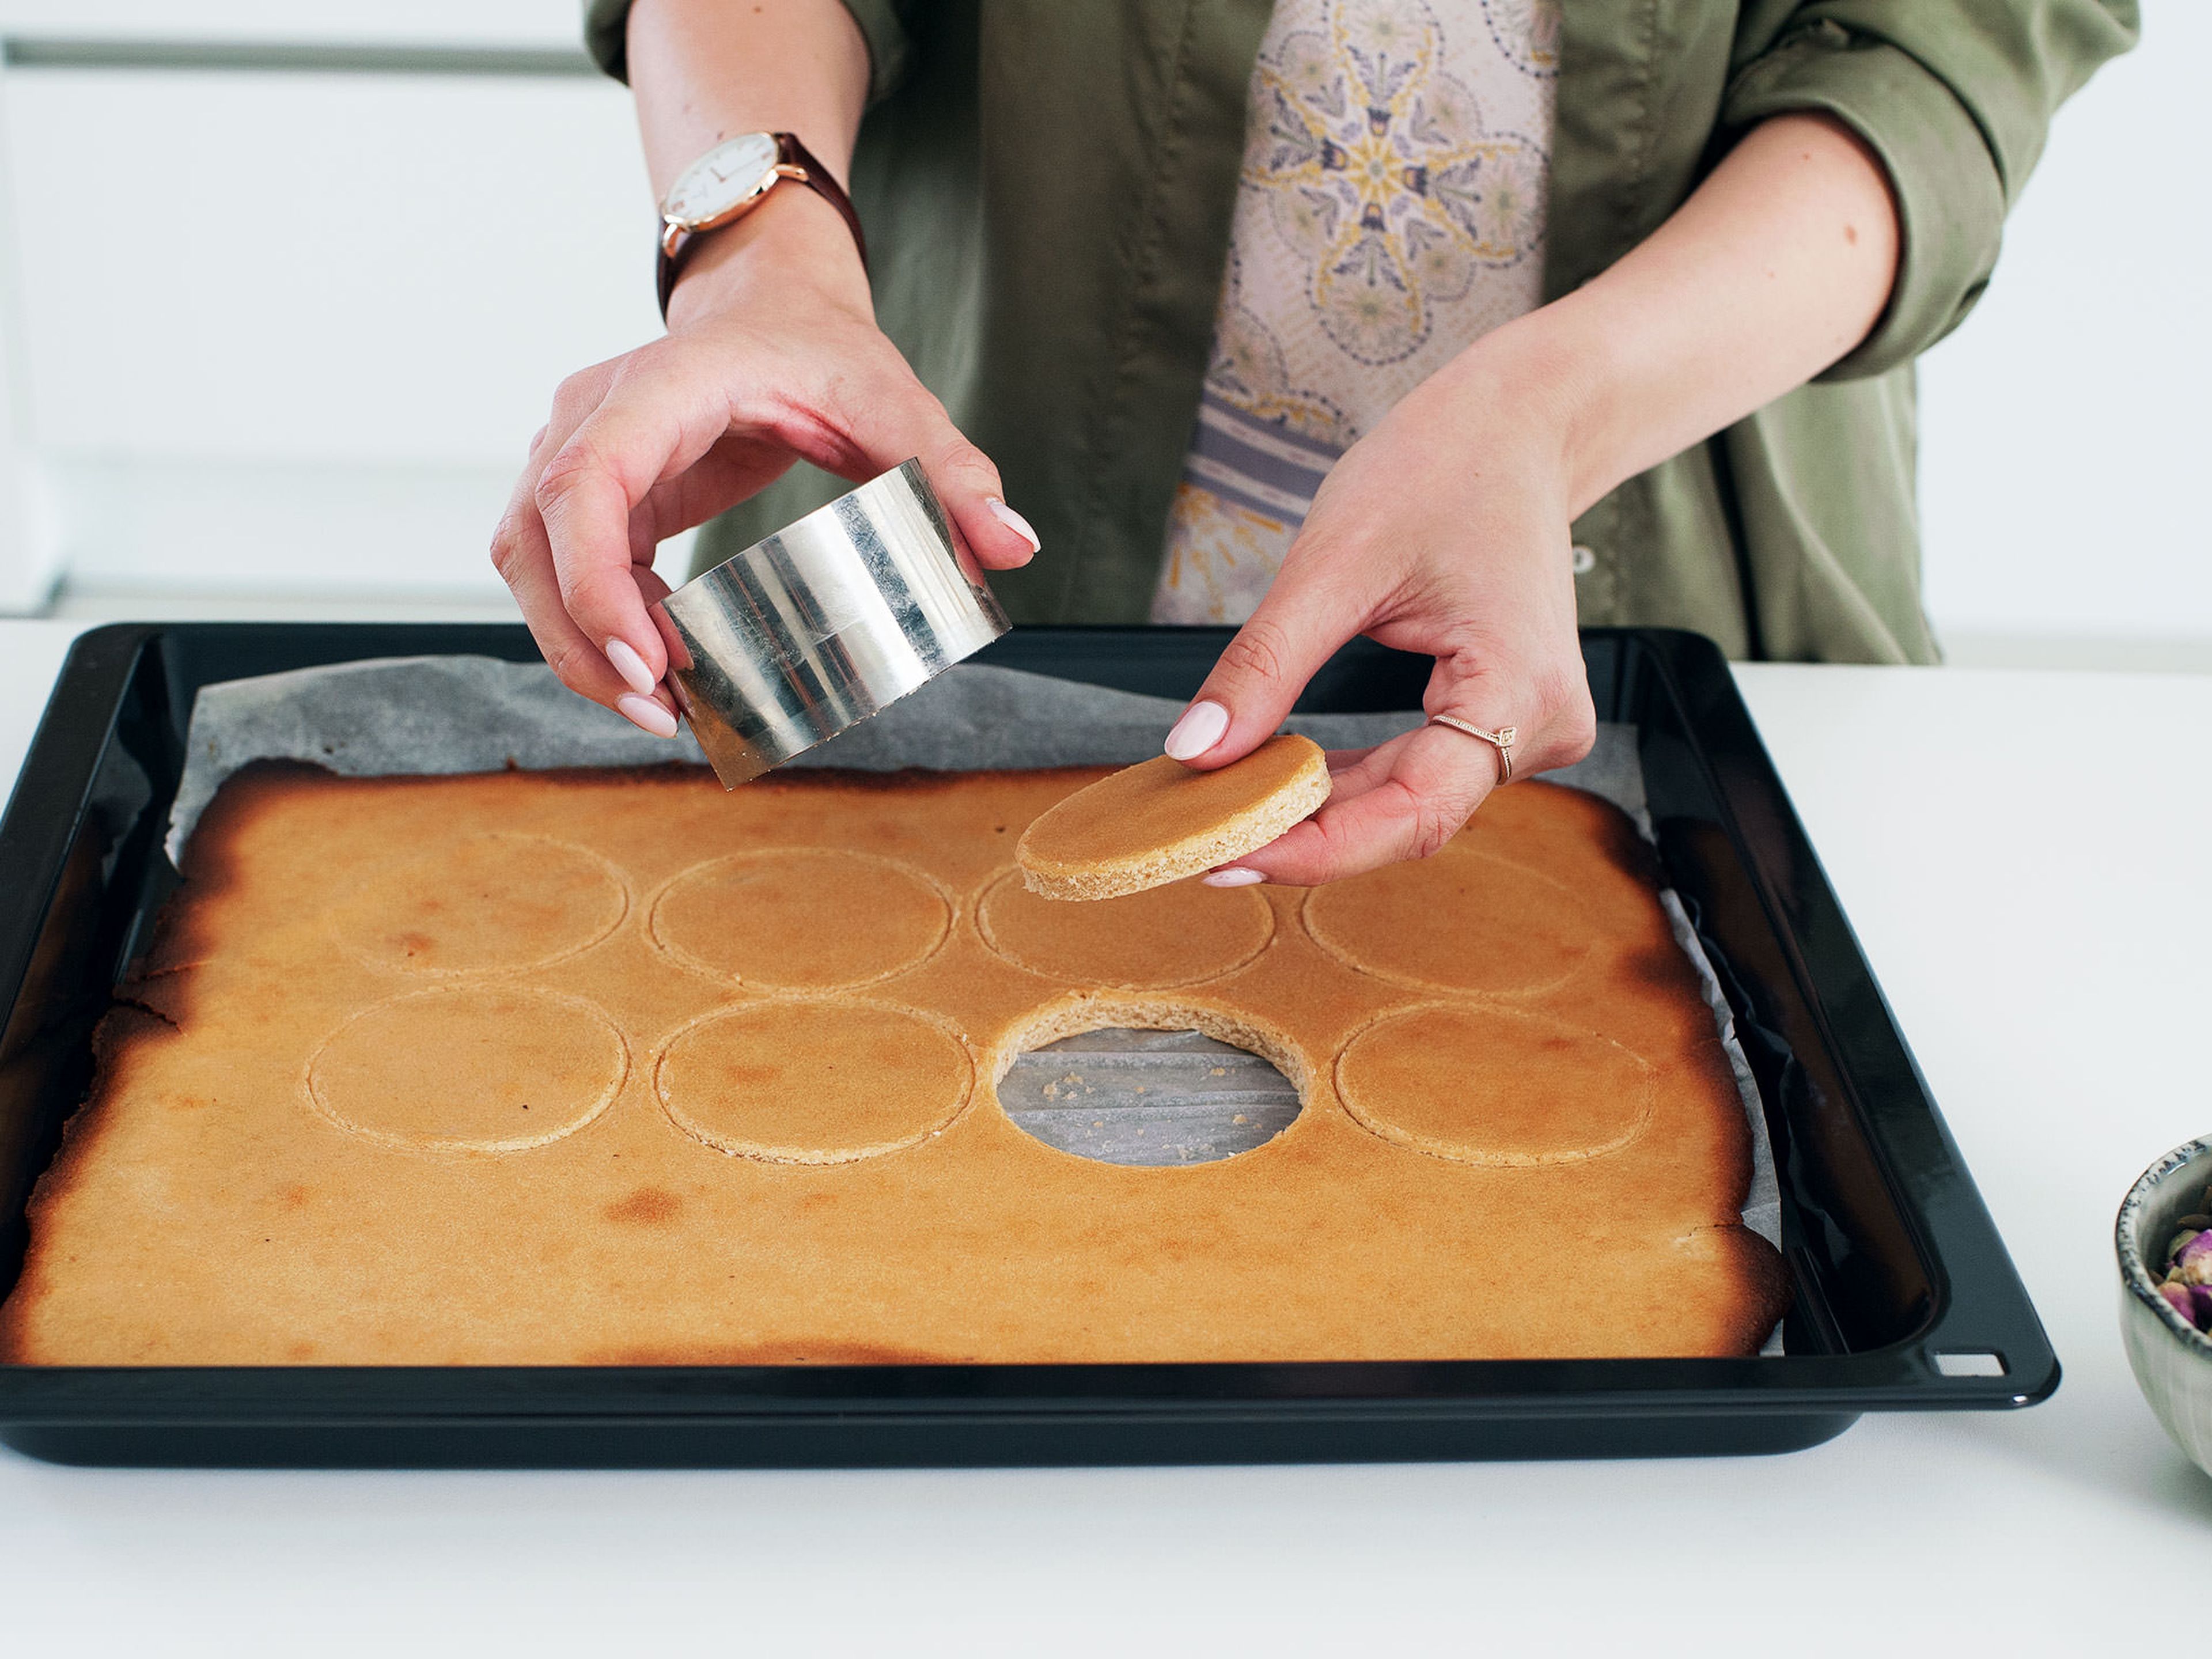 Mit einem Dessertring 16 Kreise aus dem ausgekühlten Kuchenboden stechen. Hierbei darauf achten, dass die Kreise sehr eng beieinander liegen, sodass man auch wirklich alle Kreise ausgestochen bekommt.